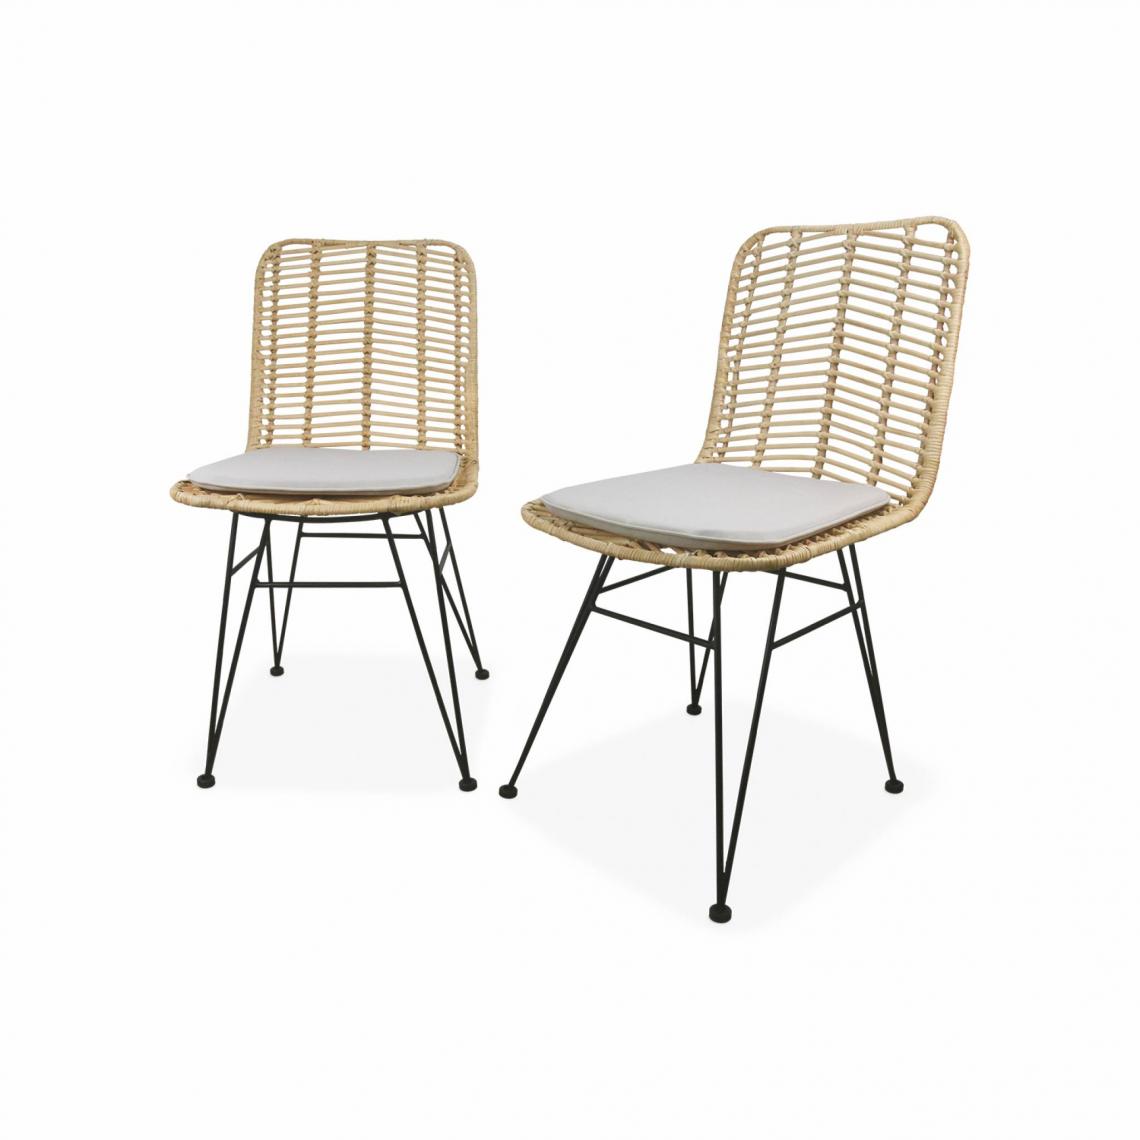 Alice'S Garden - Deux chaises en rotin naturel et métal, coussins beiges l Alice's Garden - Chaises